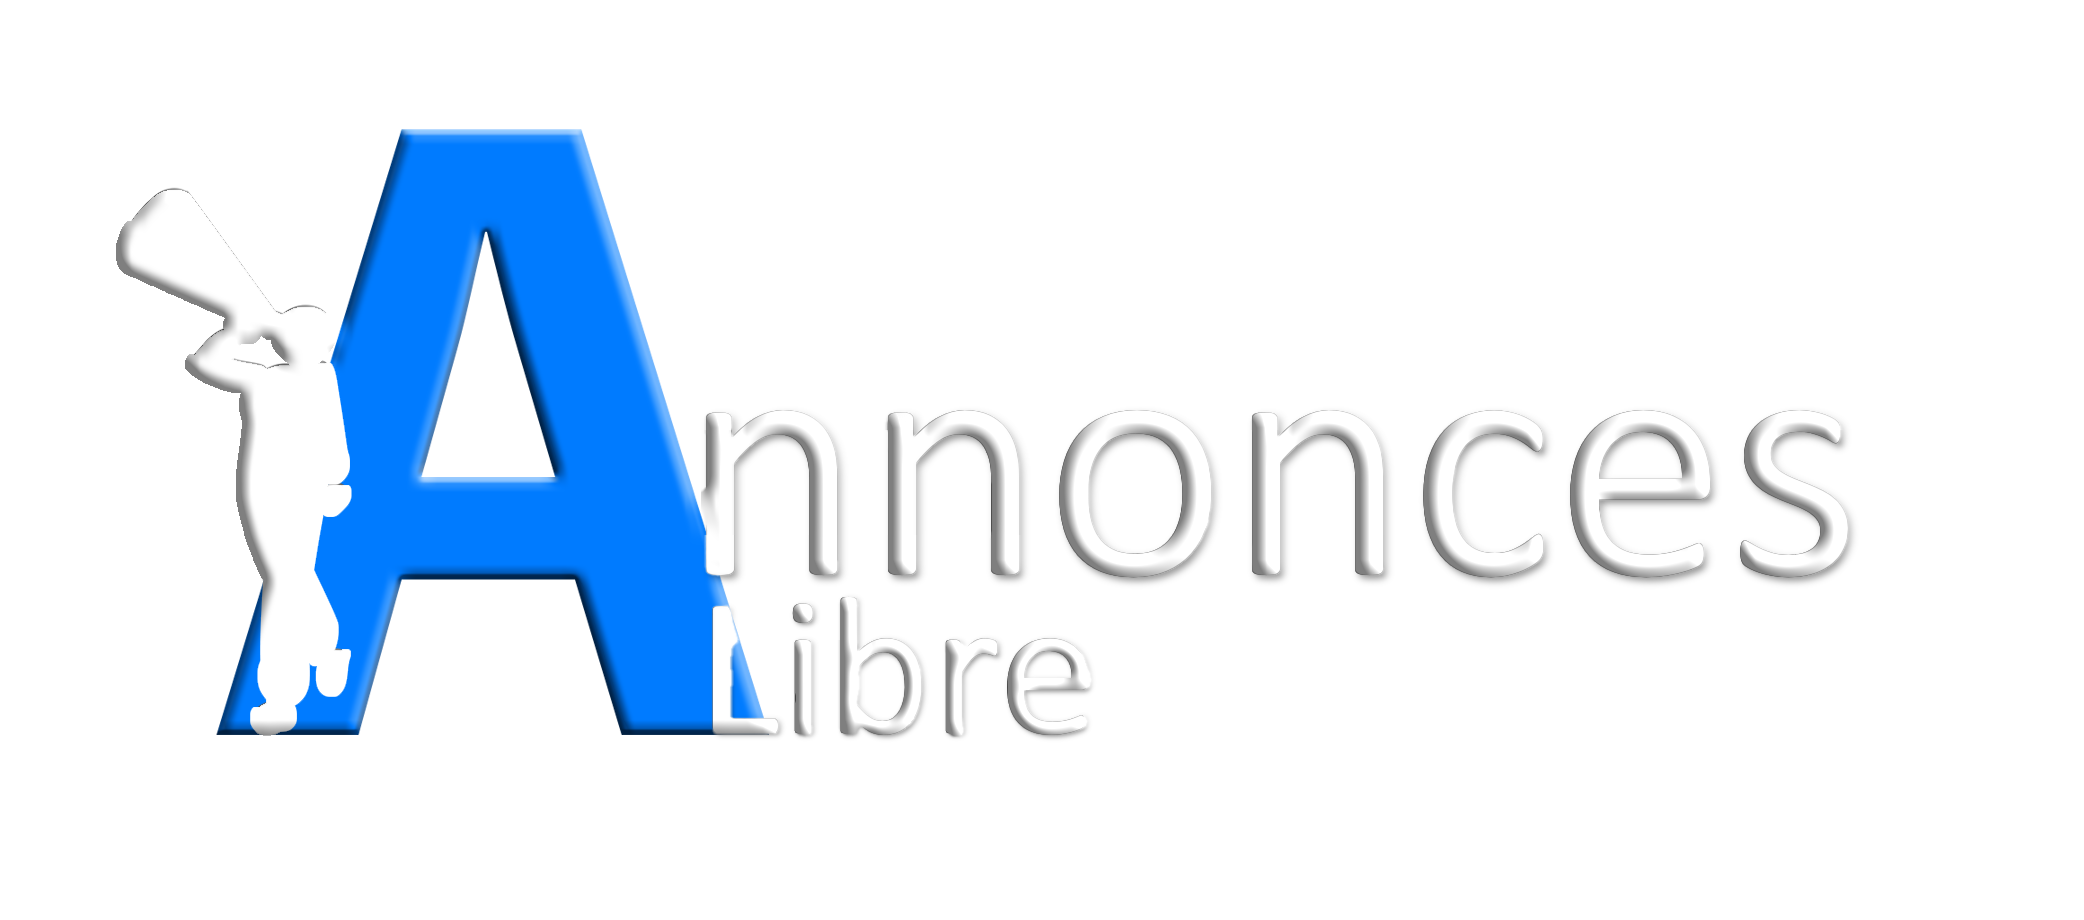 Annonce Libre logo dark